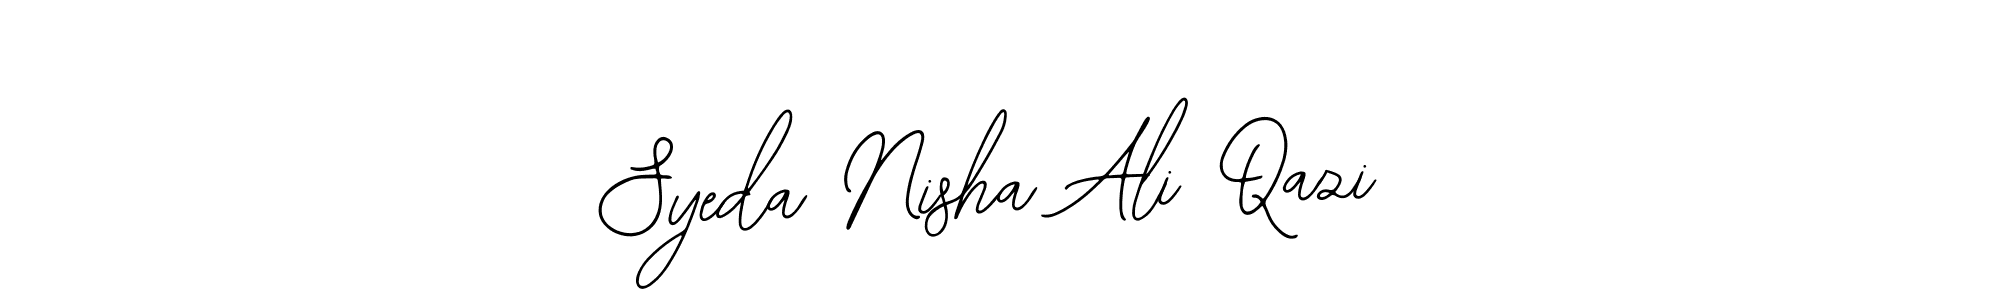 How to Draw Syeda Nisha Ali Qazi signature style? Bearetta-2O07w is a latest design signature styles for name Syeda Nisha Ali Qazi. Syeda Nisha Ali Qazi signature style 12 images and pictures png